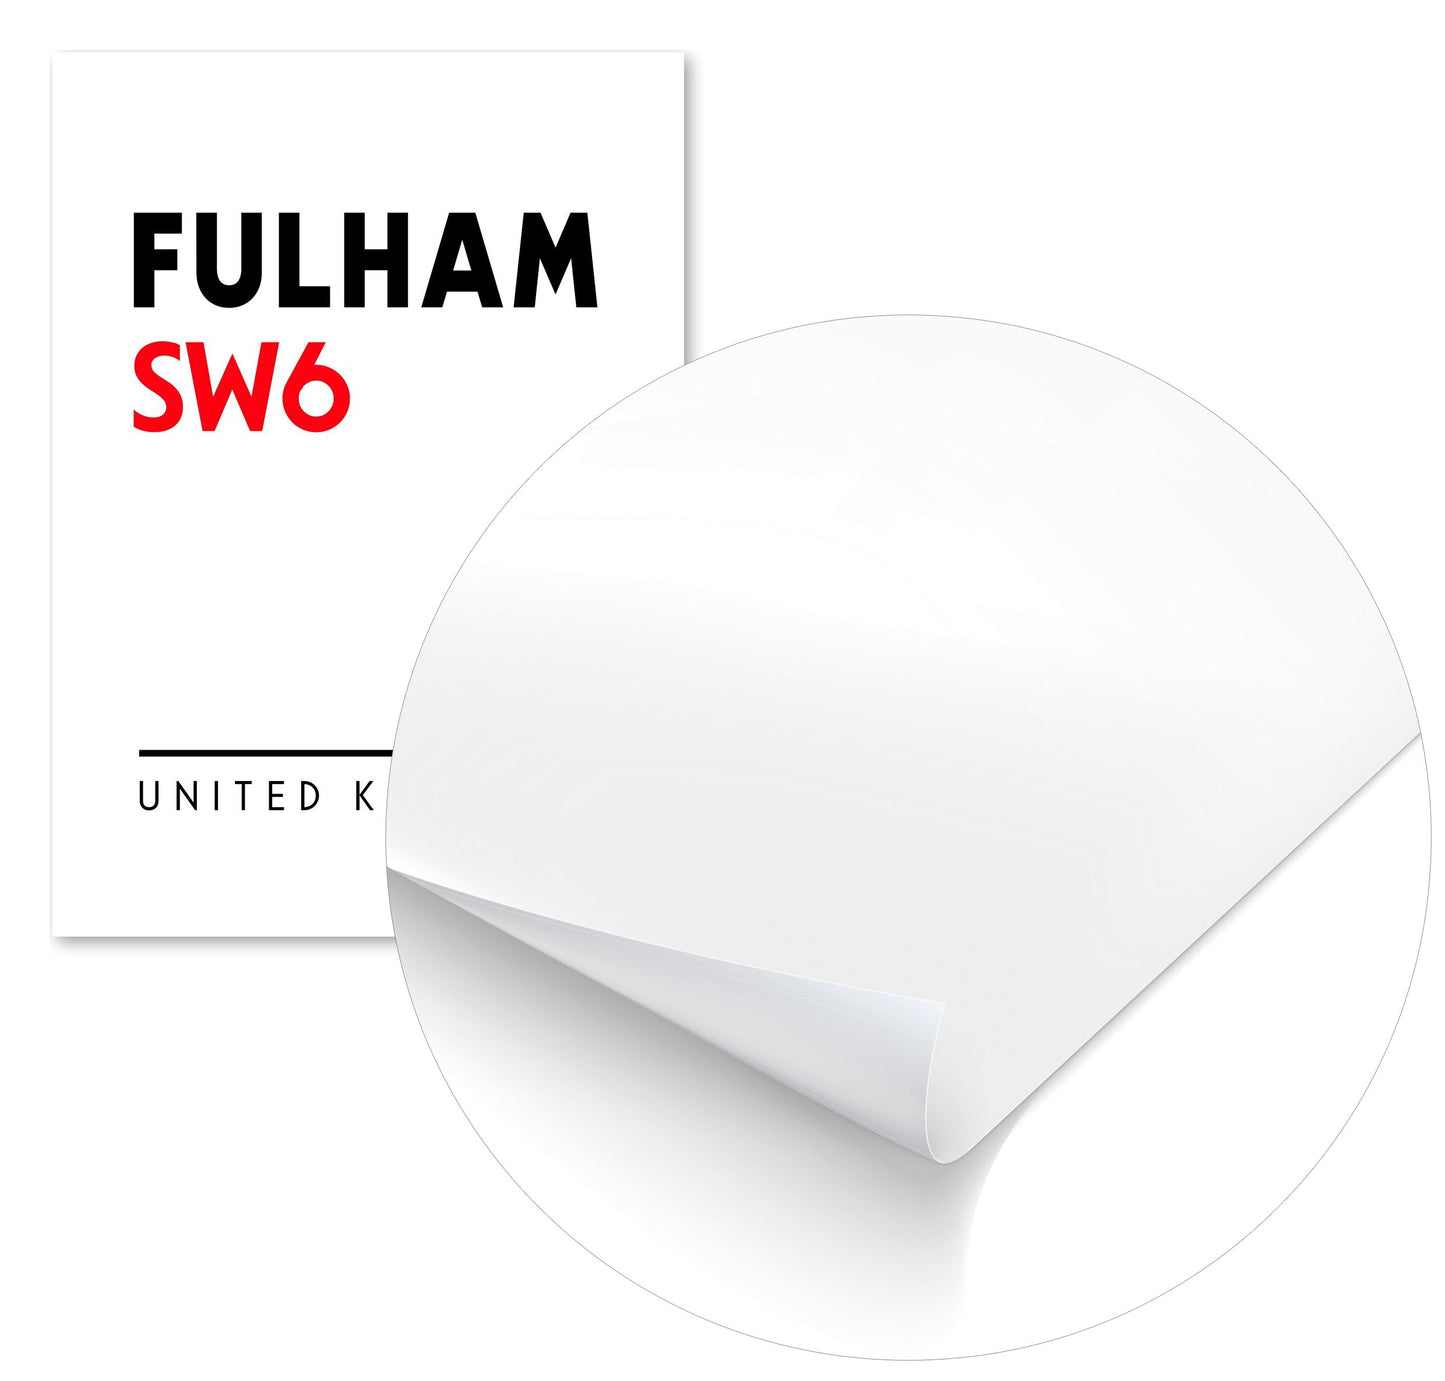 Fulham Sw6 Postal Code - @VickyHanggara